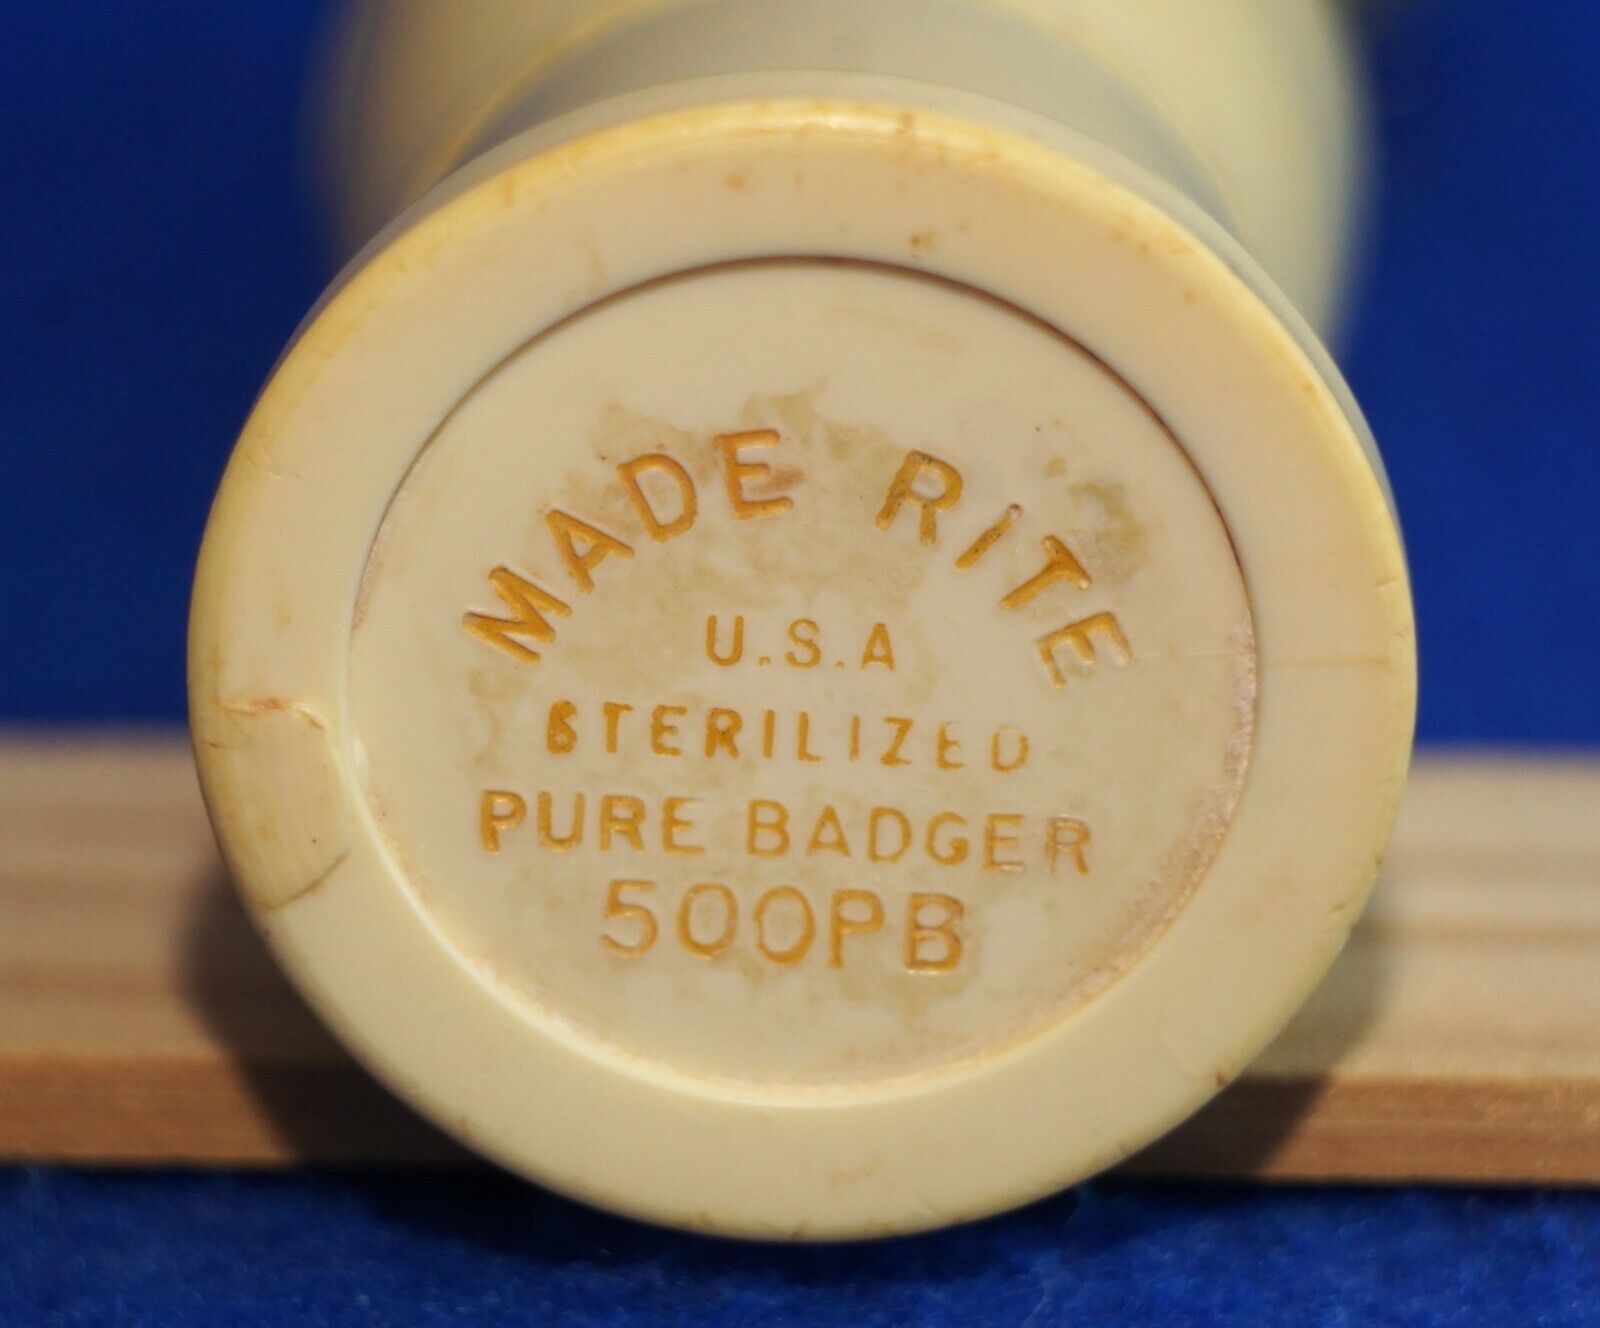 VTG, Made Rite Shaving Brush, Pure Badger Hair, Sterilized, 500 PB, Made in USA